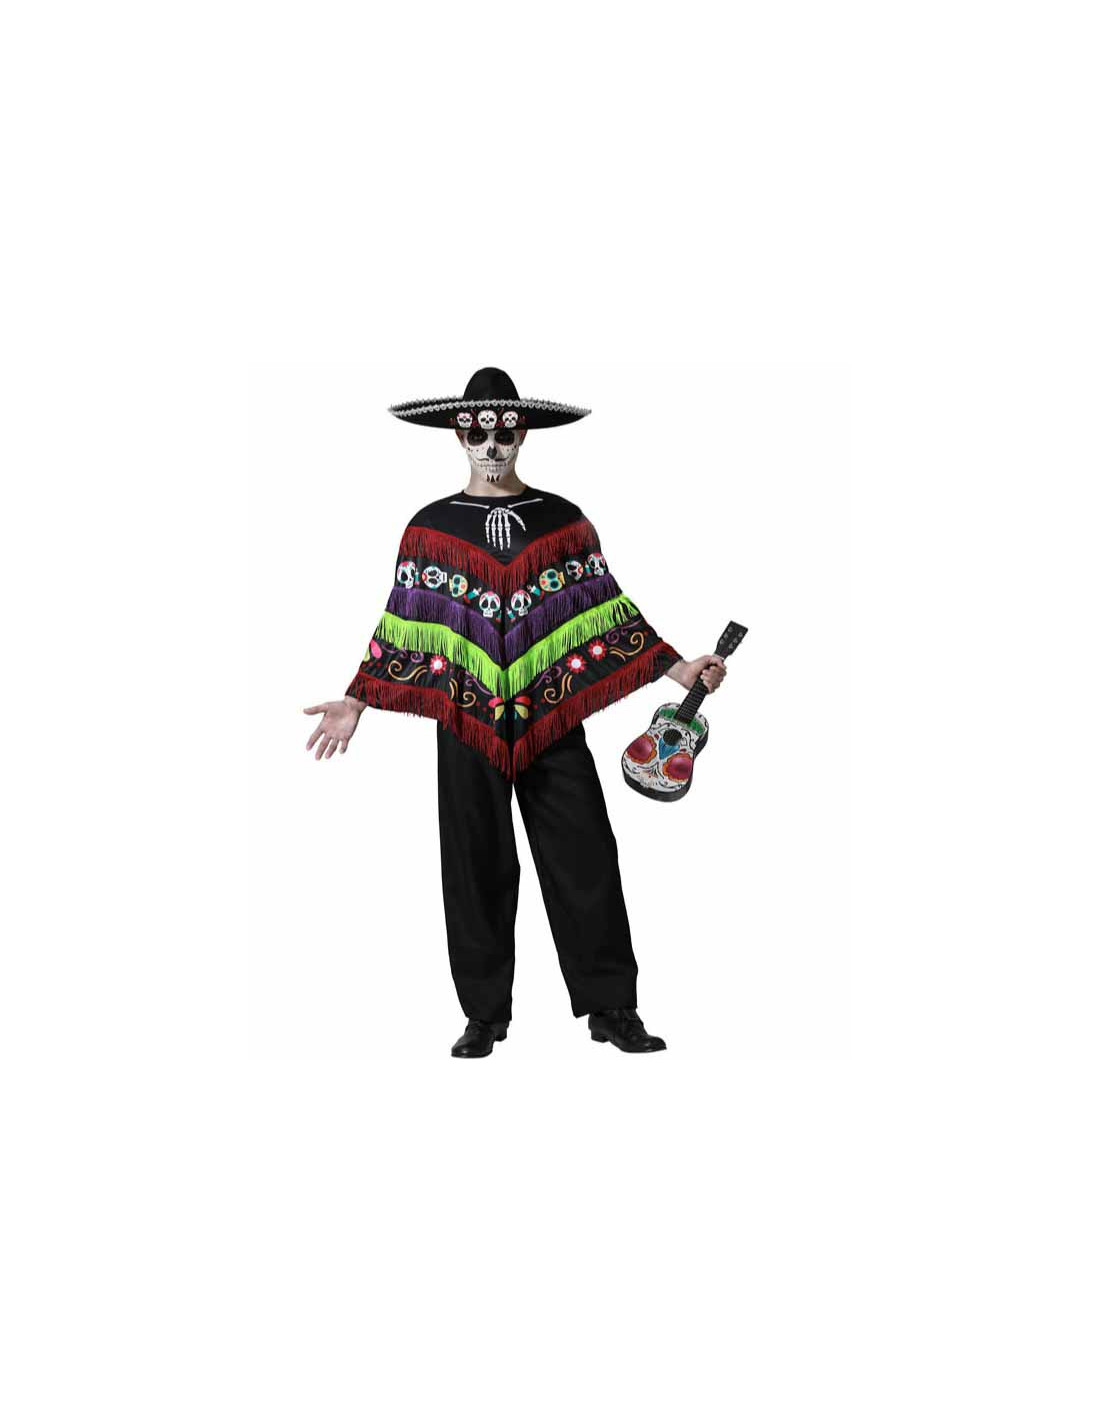 Disfraz adulto Catrin Pancho con pajarita y chaleco impreso ㅤ, Halloween  Disfraz Adulto